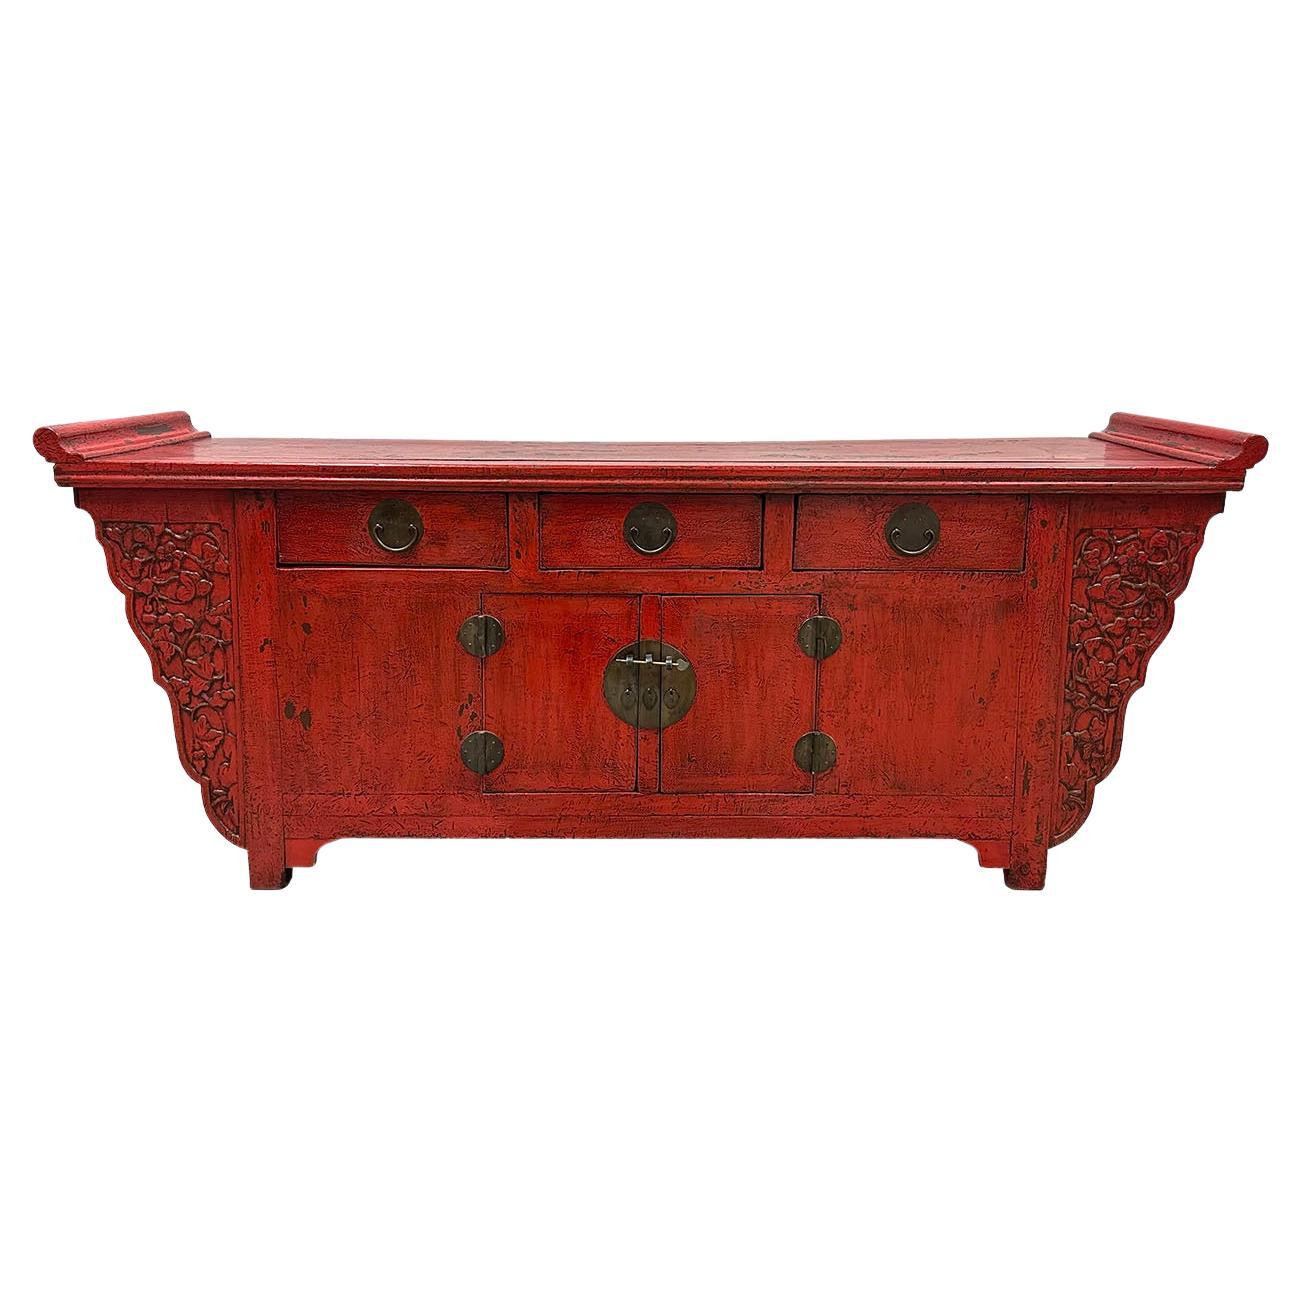 Cabinet d'autel, table-buffet ou buffet chinois laqué rouge du début du 20e siècle